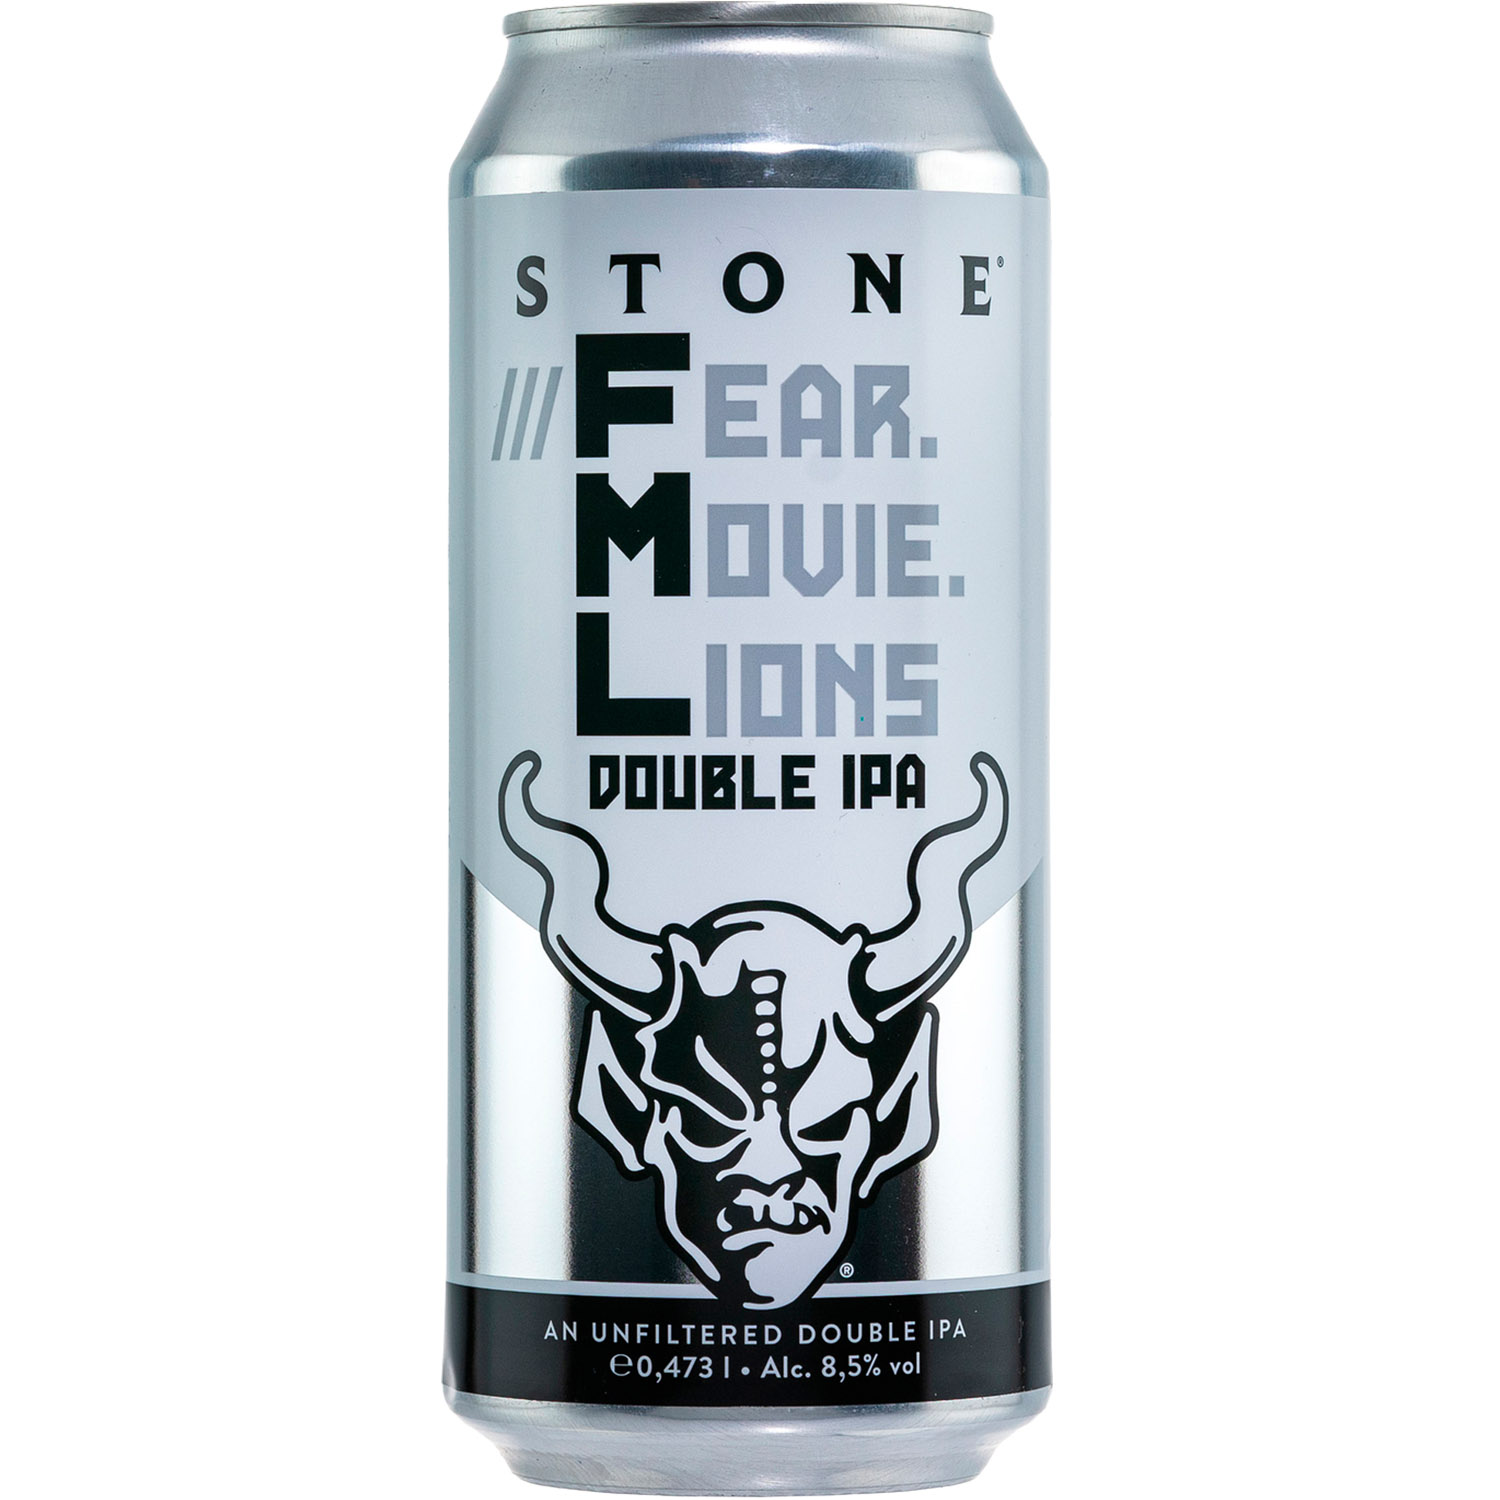 Пиво Stone Fear Movie Lions Hazy Double IPA, полутемное, 8,5%, ж/б, 0,473 л - фото 1